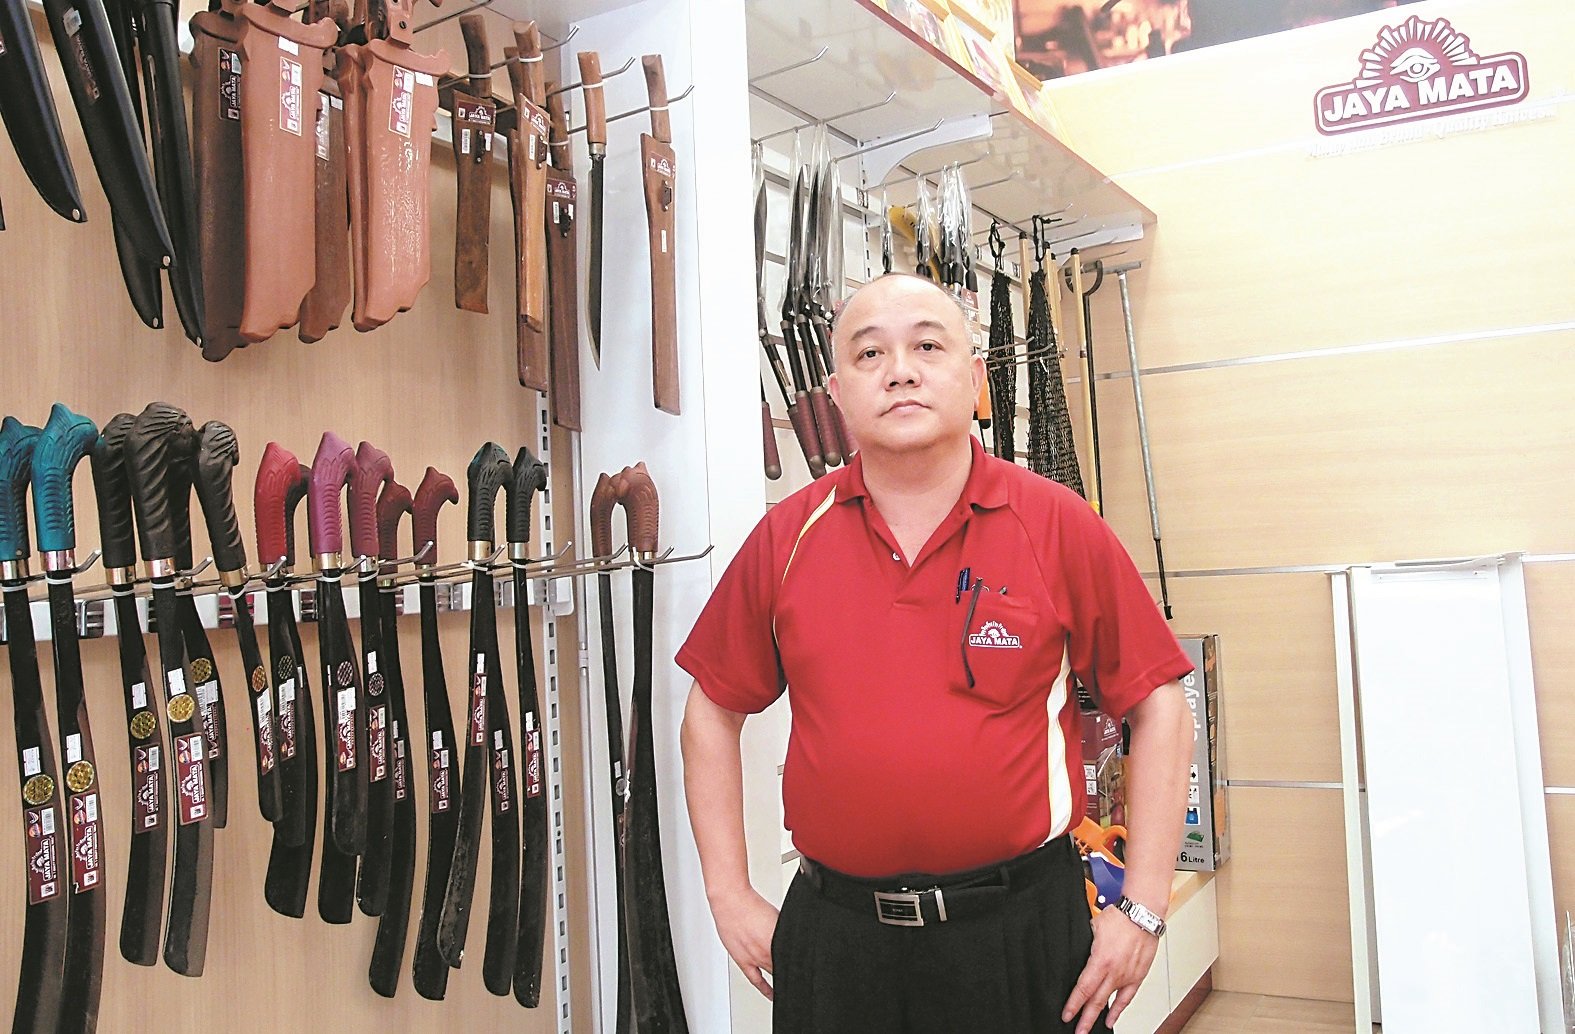 陈天利强调Jaya Mata手工制造的高品质园丘工具、刀具等皆受到外国人赞赏。